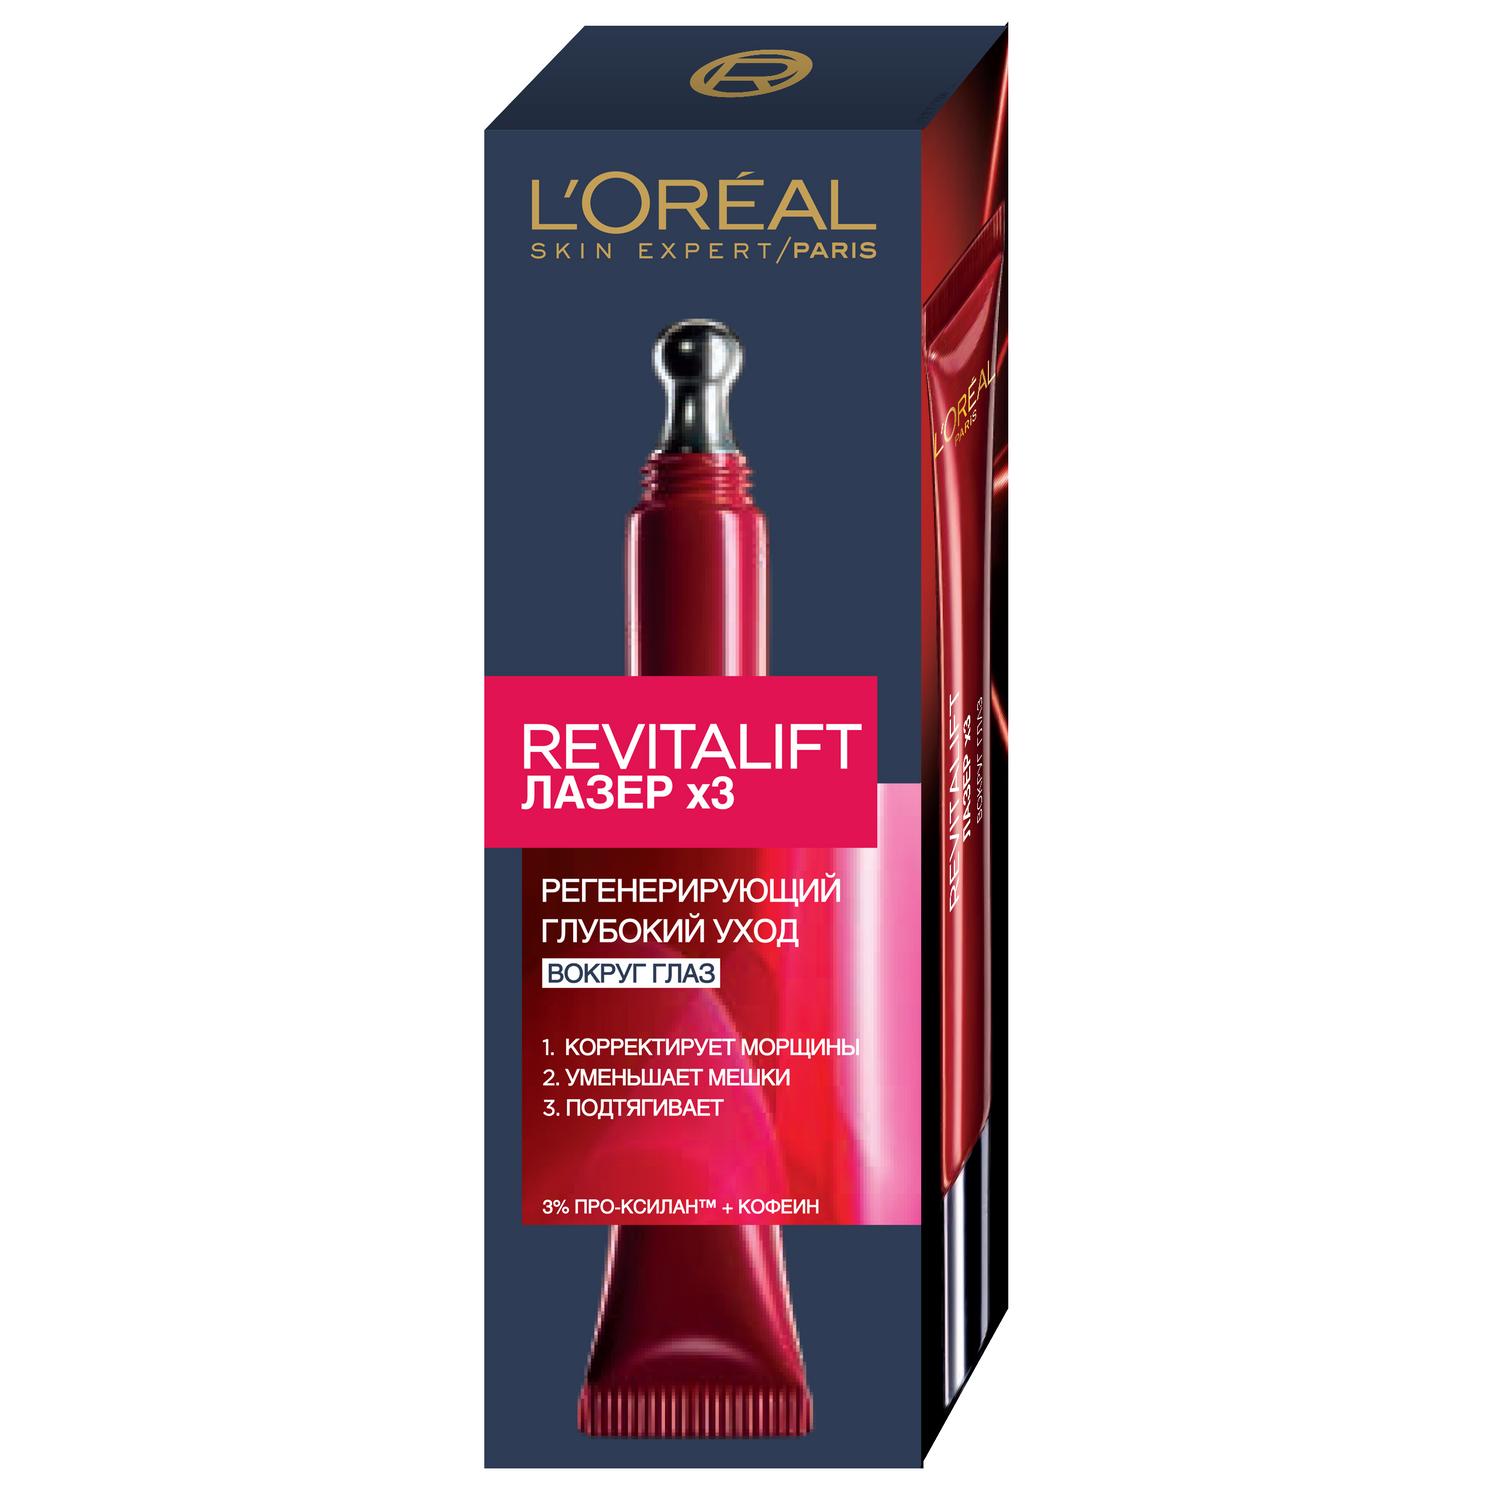 Сыворотка L’Oréal Revitalift Лазер х3 30мл (A6672200) сыворотка для лица себорегулирующая 30мл